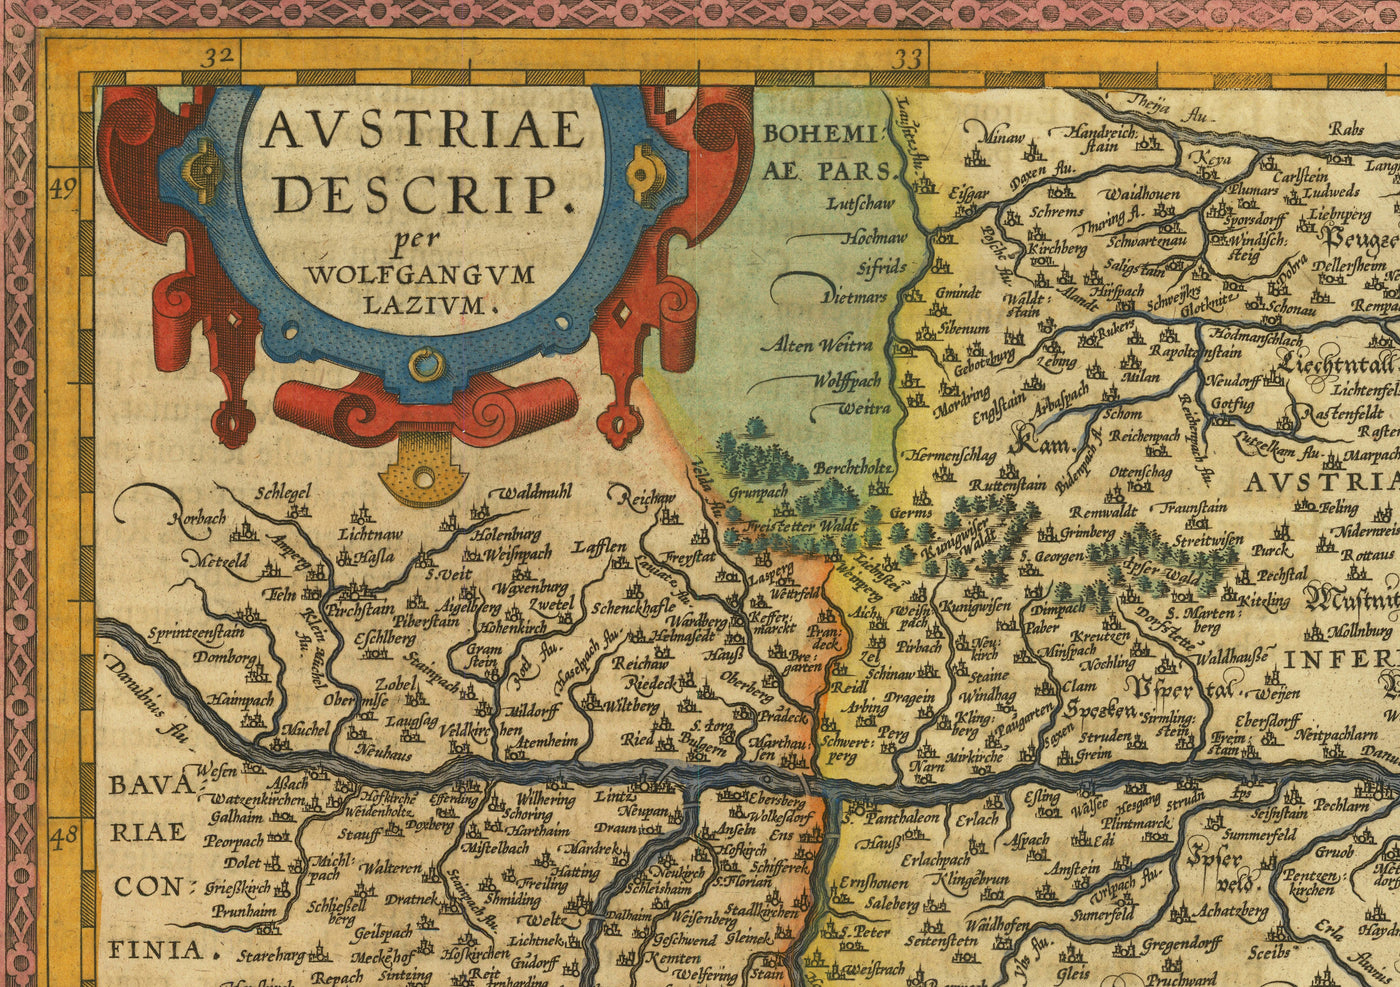 Alte Karte von Österreich von Abraham Ortelius aus dem Jahr 1594 - Wien, Neusiedler See, Tulin, Bratislava, Wiener Neustadt